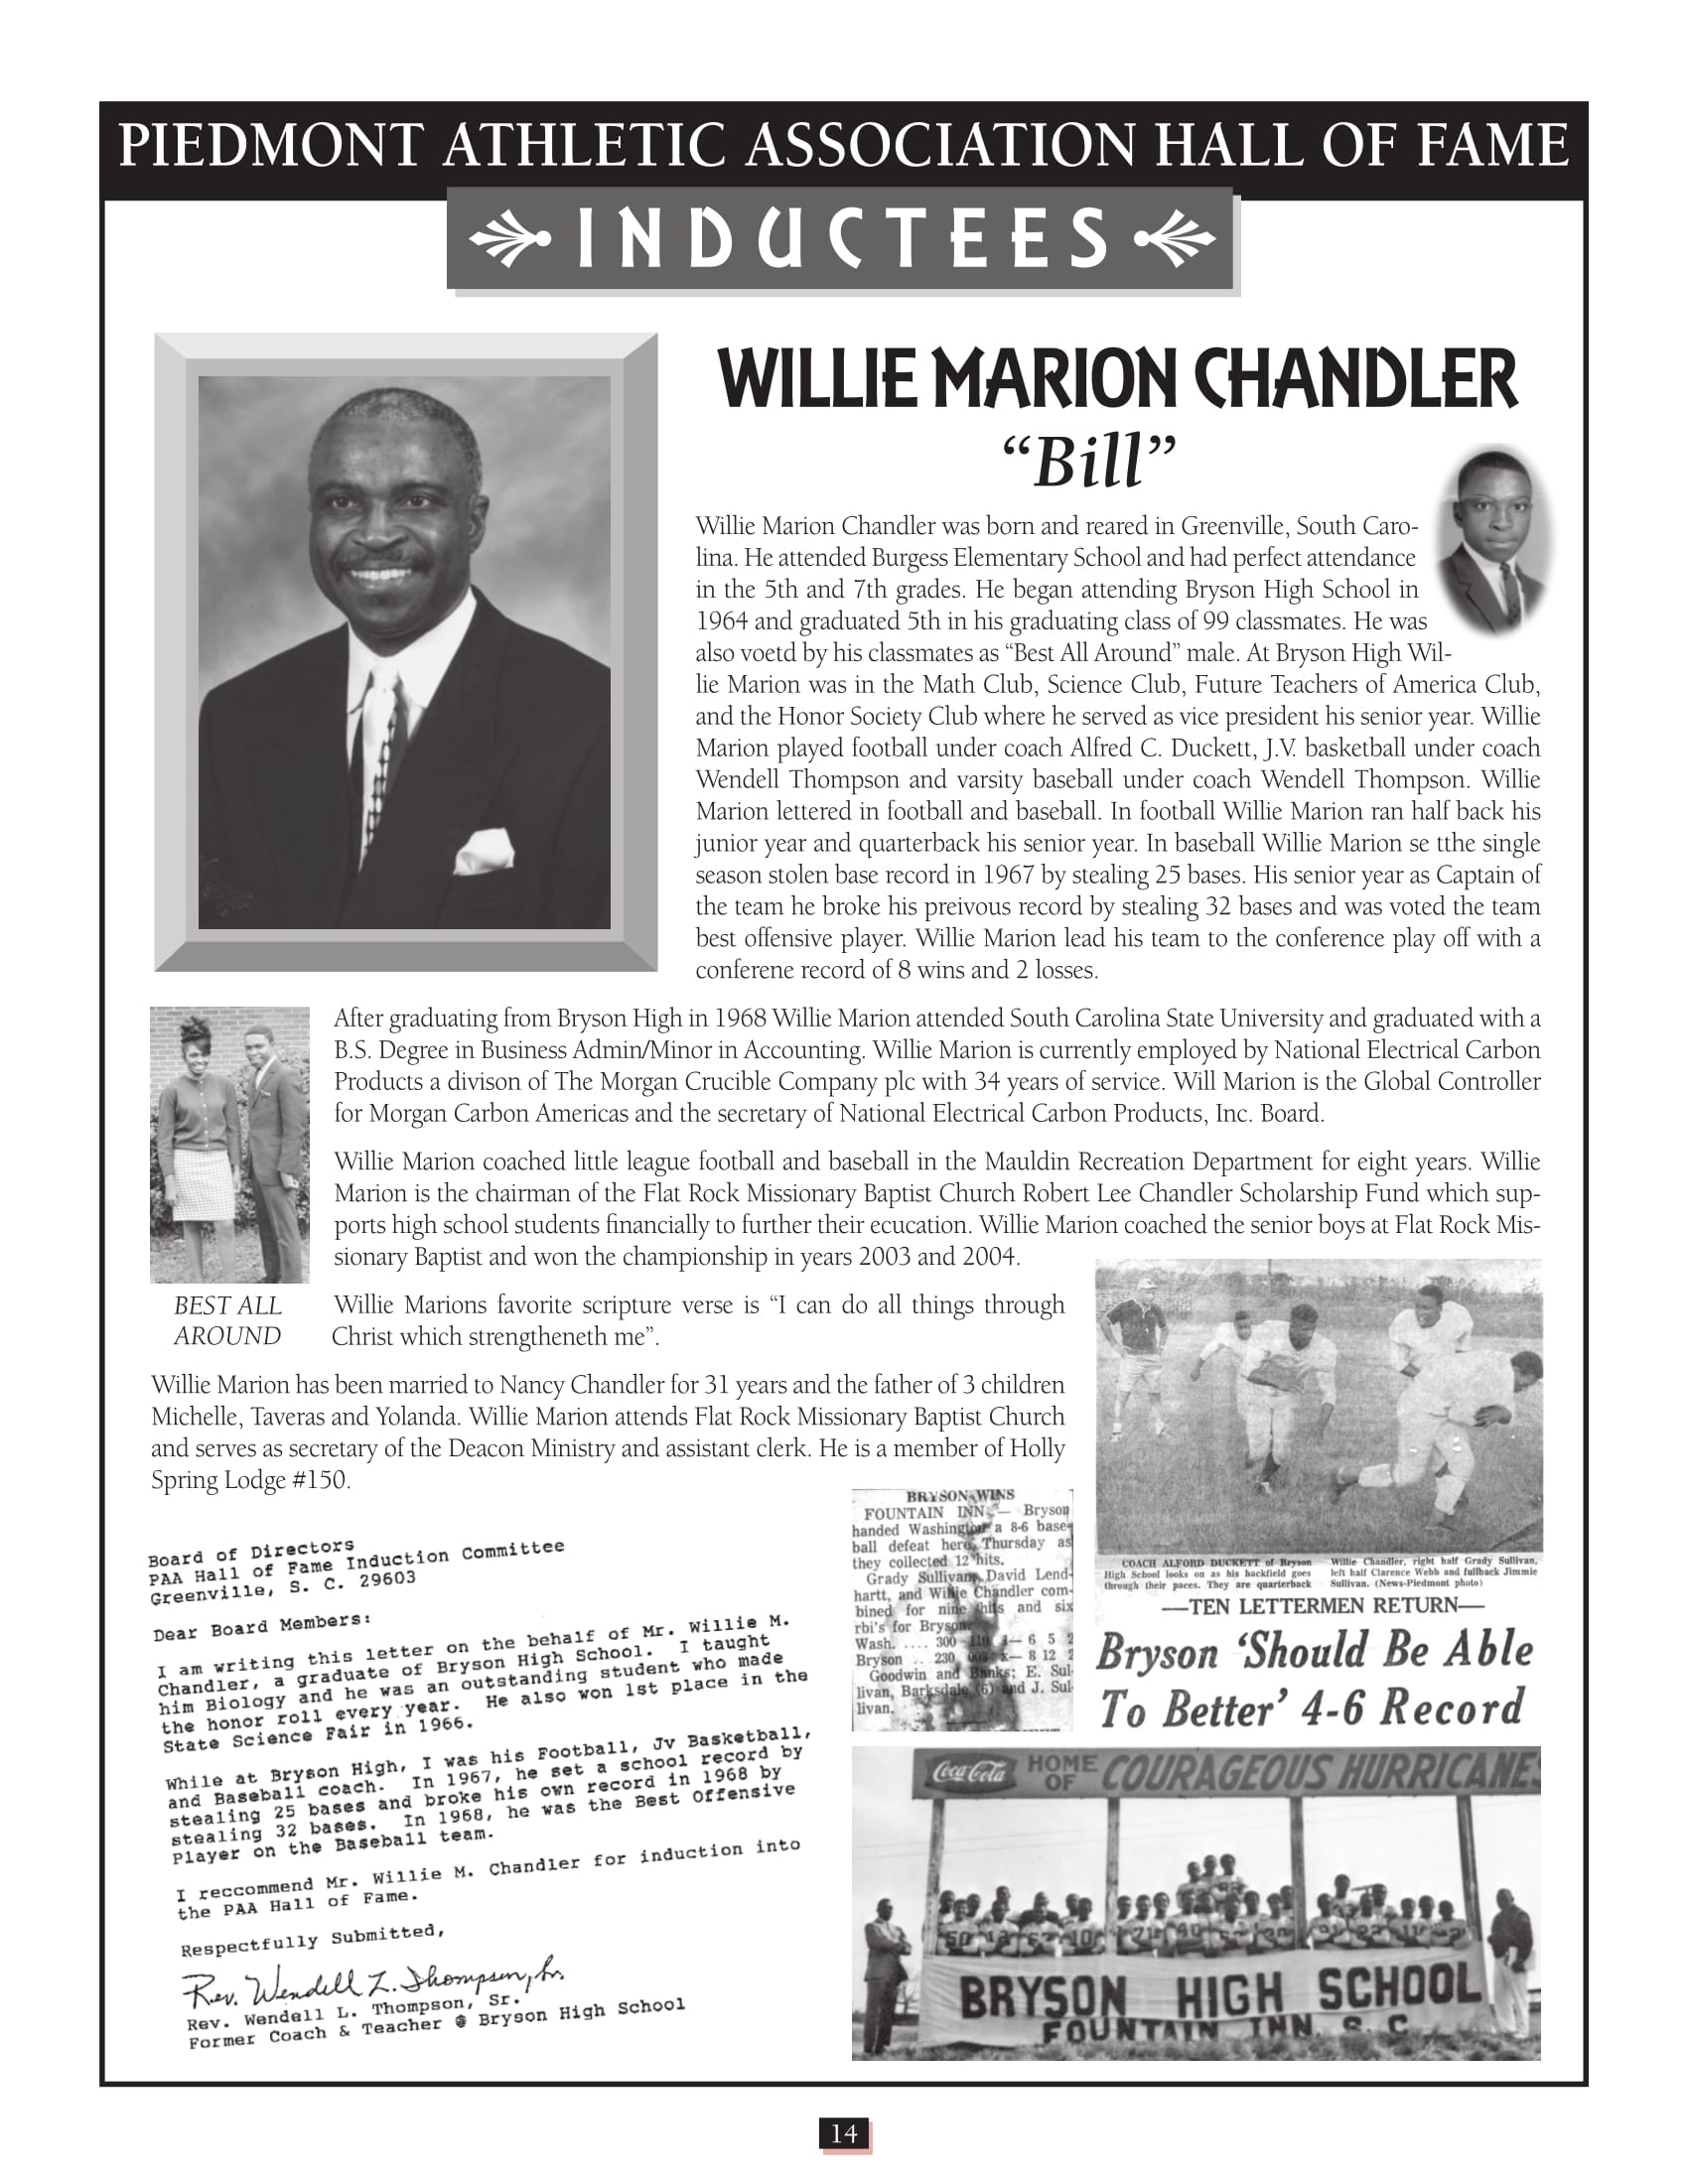 Willie Chandler